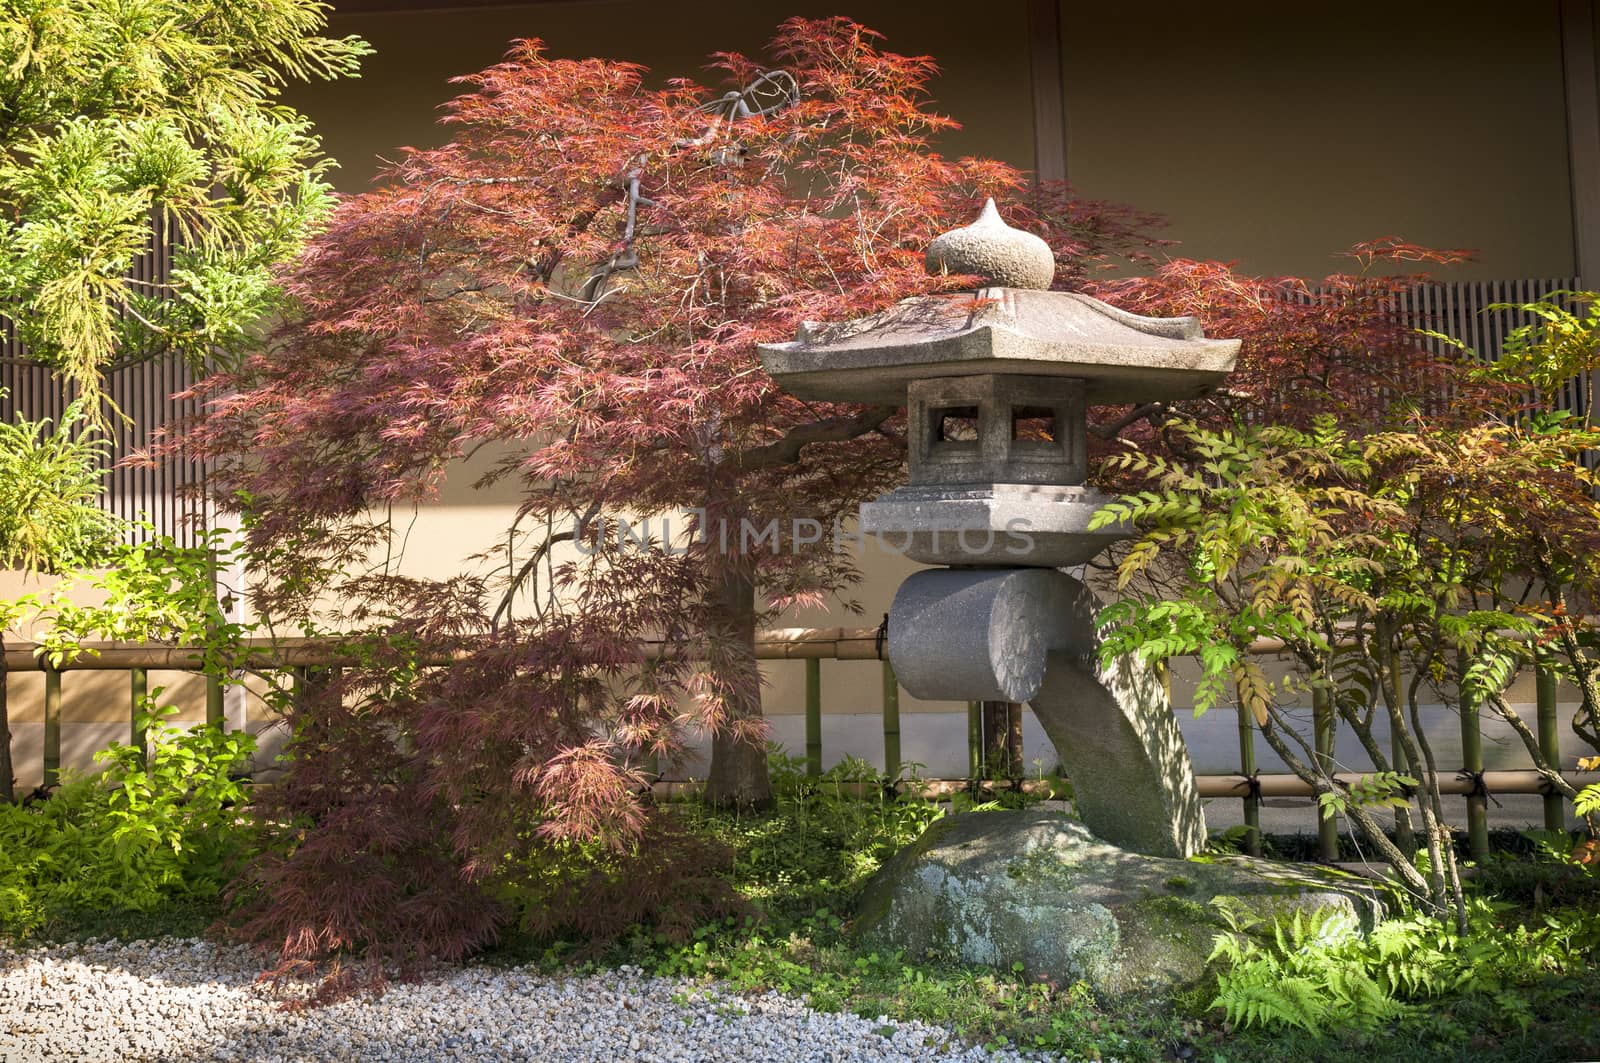  Japanese stone lantern and red-maple tree in quiet zen garden in Tokyo Japan